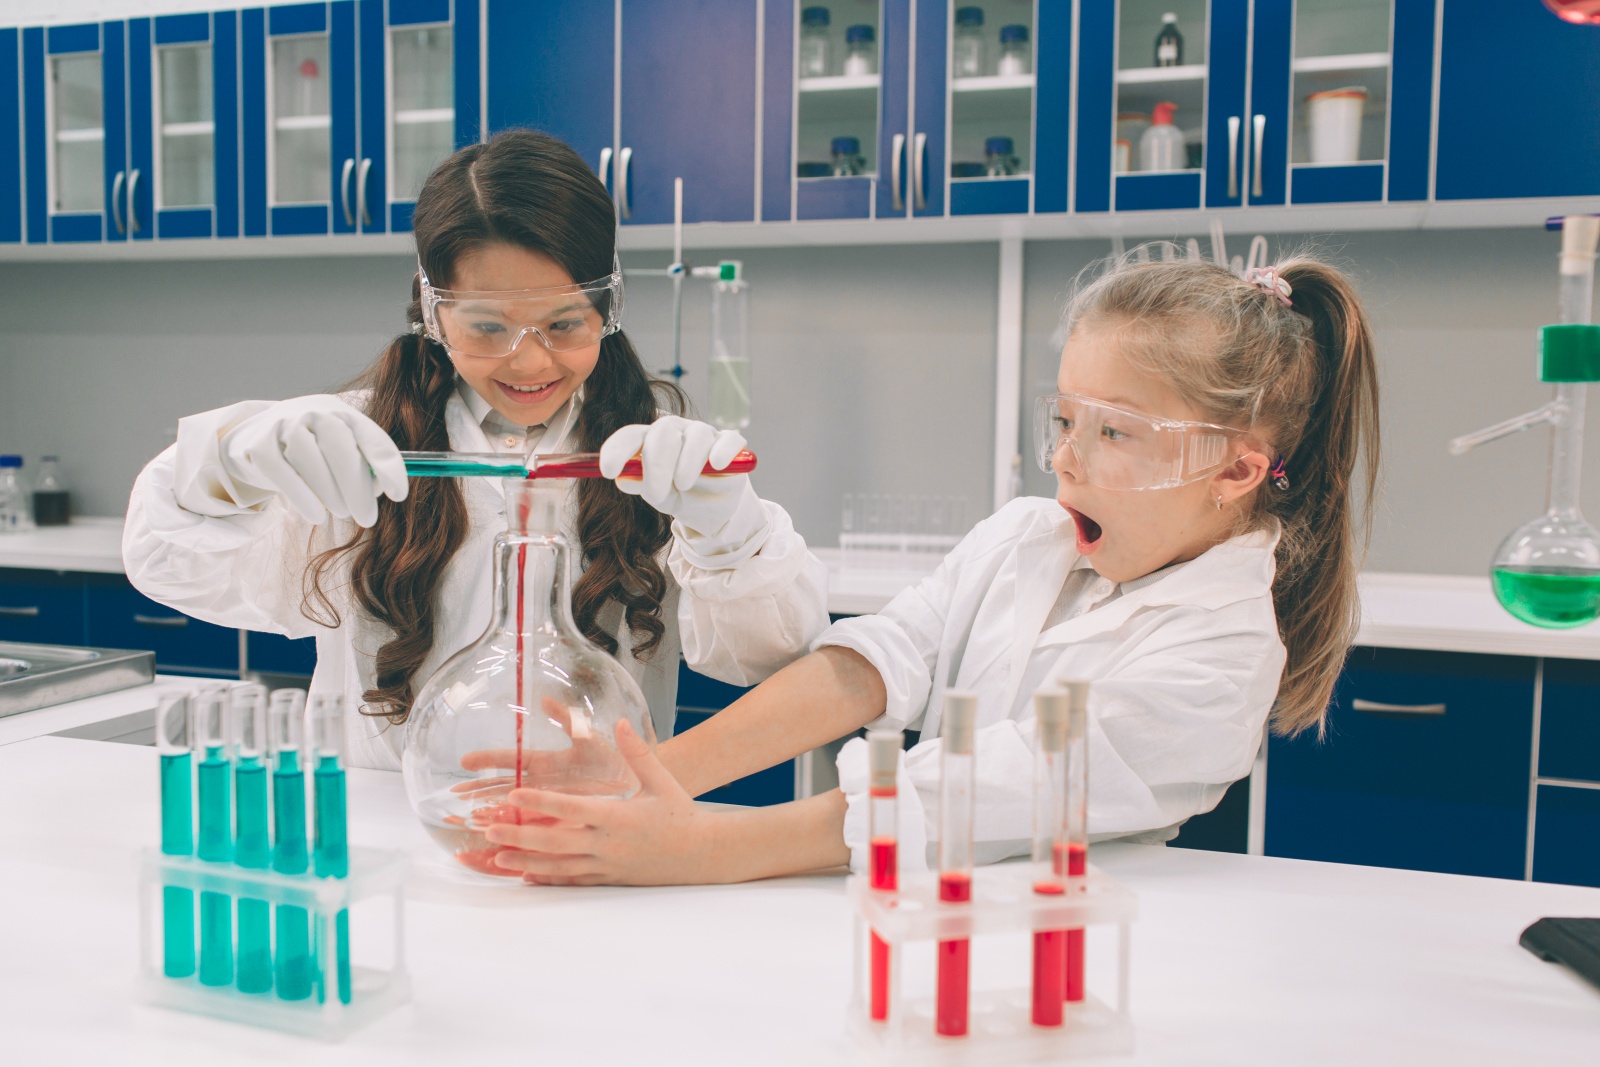 Изучение химии в школе. Лаборатория для детей. Лаборатория в школе. Детская хим лаборатория. Химическая лаборатория для детей.